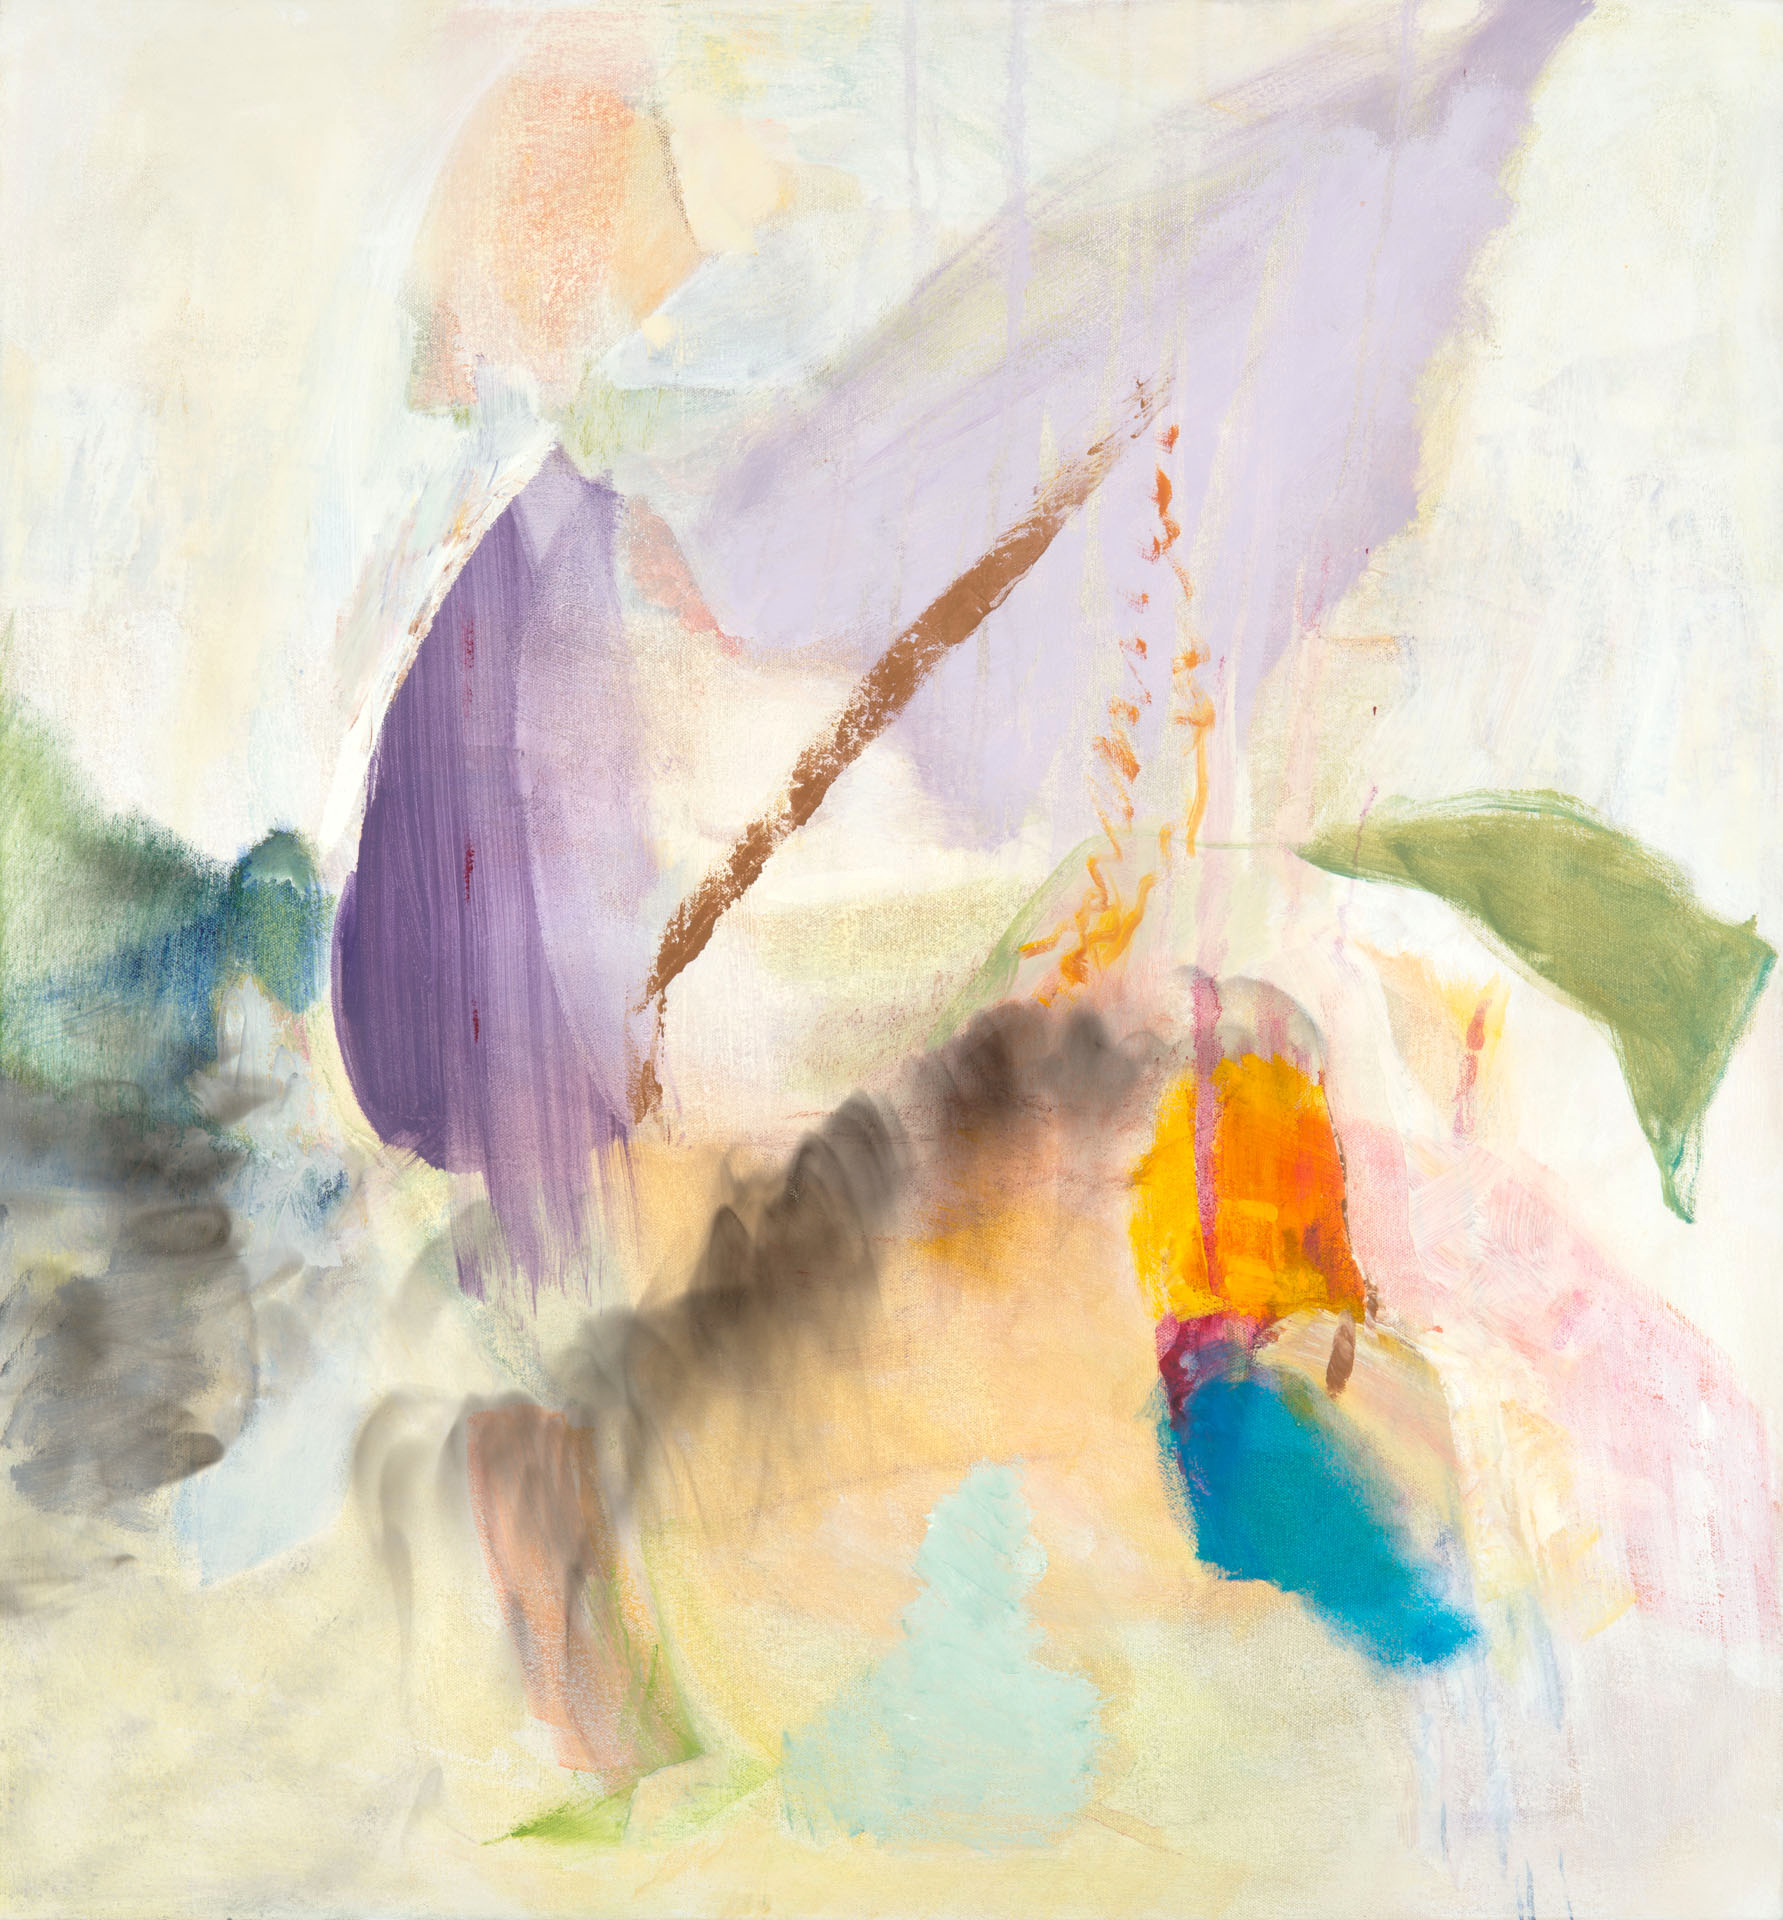   Yogini  2019 oil on canvas, 30 x 28” N/A 